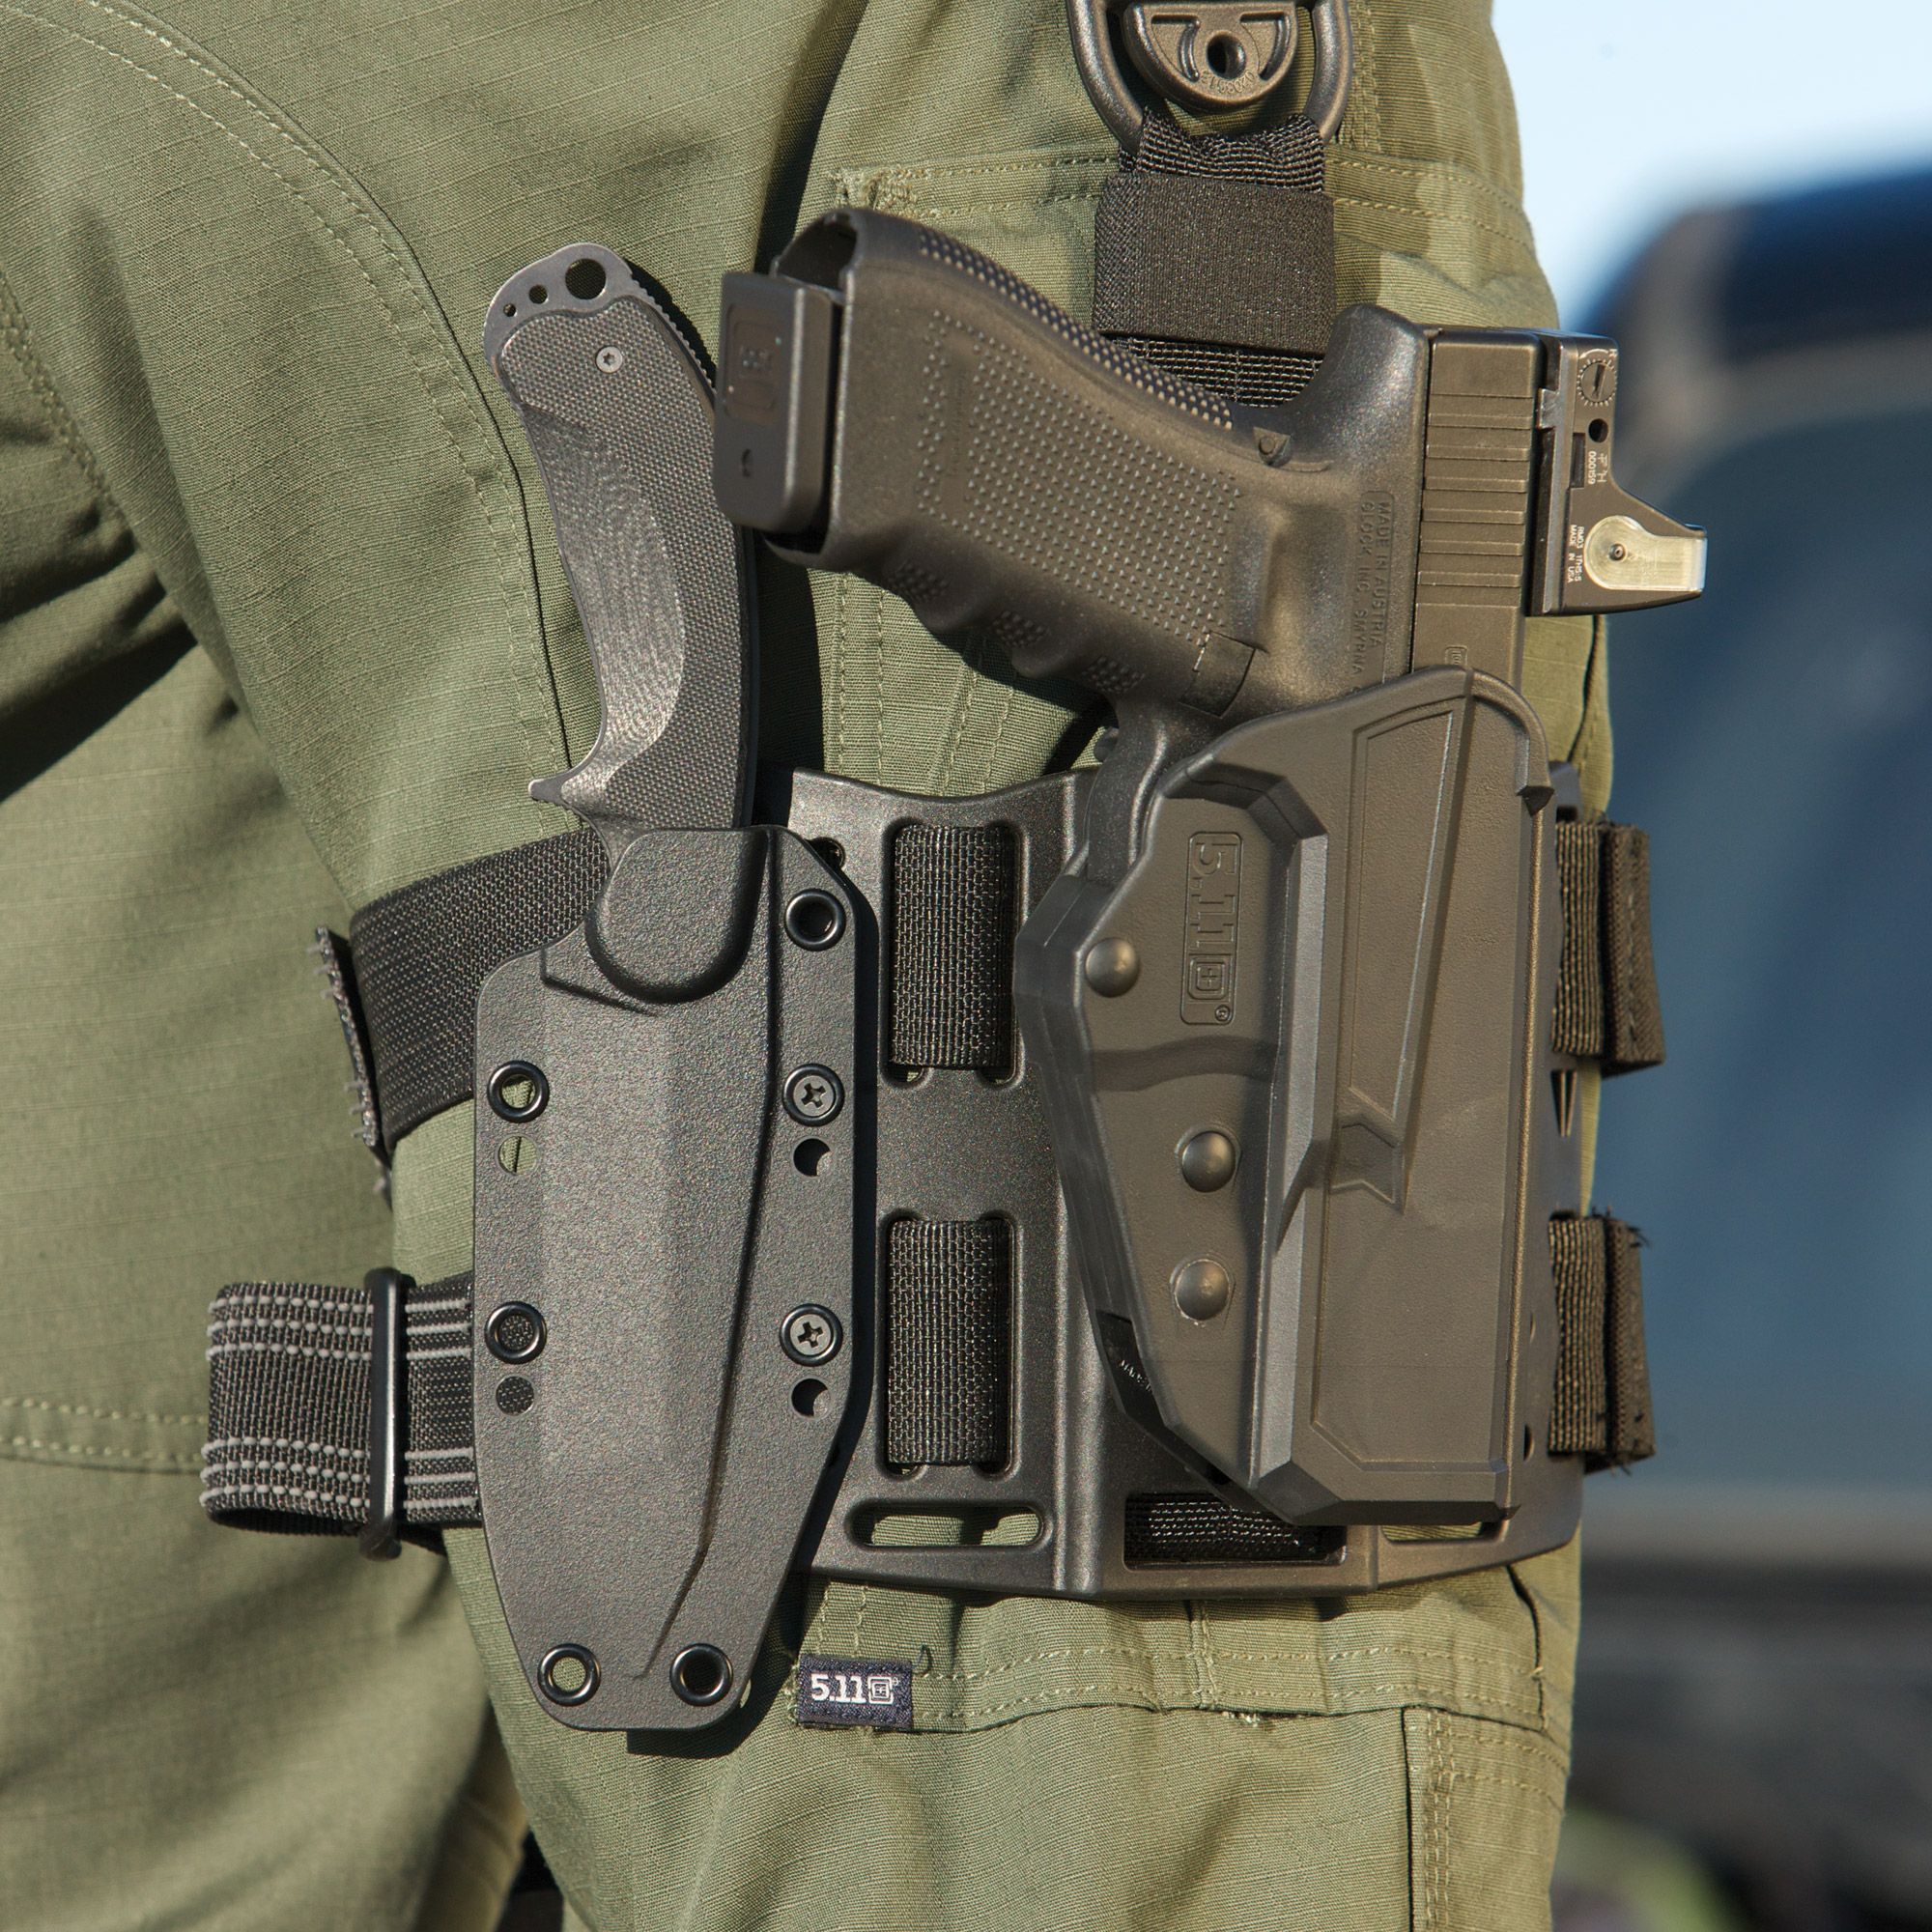 5.11 Tactical ThumbDrive Gun Holster | Official 5.11 Site | A15 ...